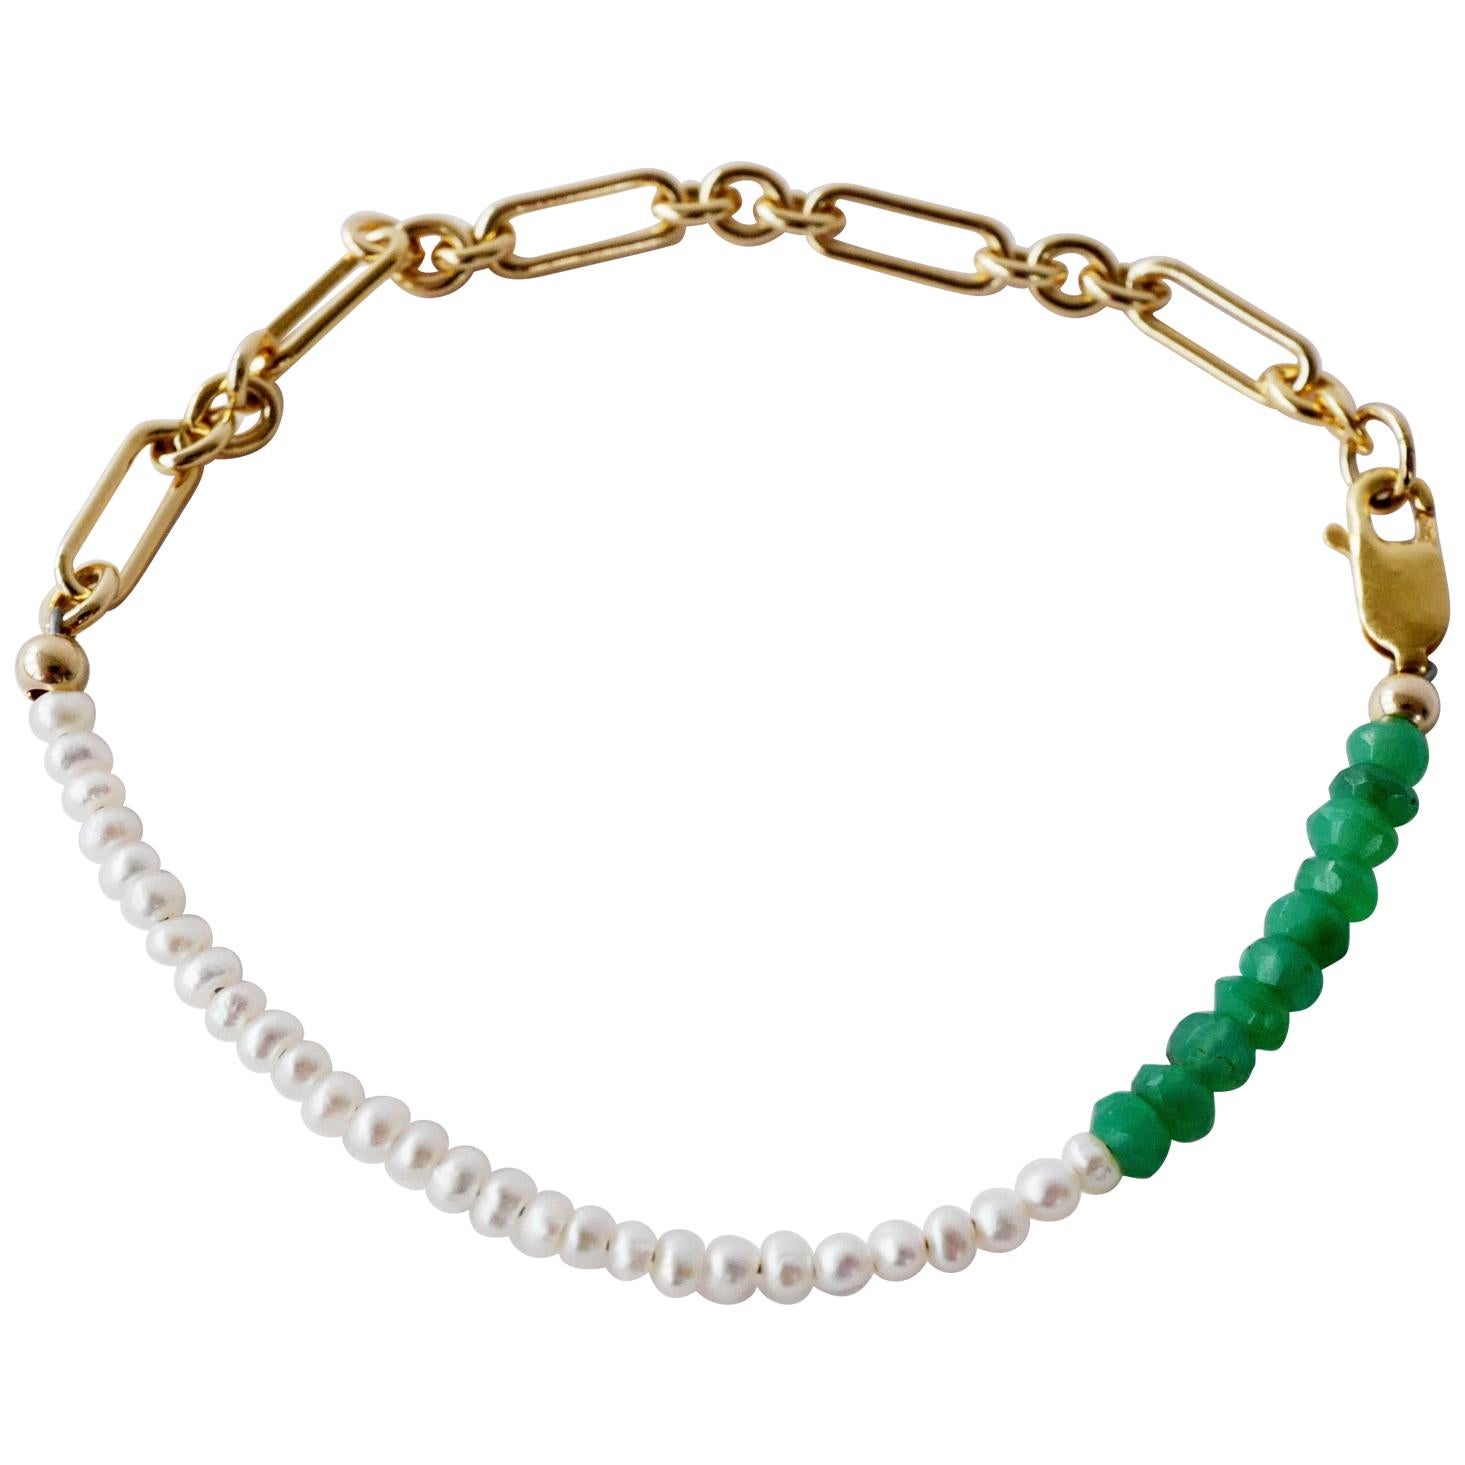 Weißes Perlenkettenarmband Grüner Chrysopras Goldgefüllt  J DAUPHIN

